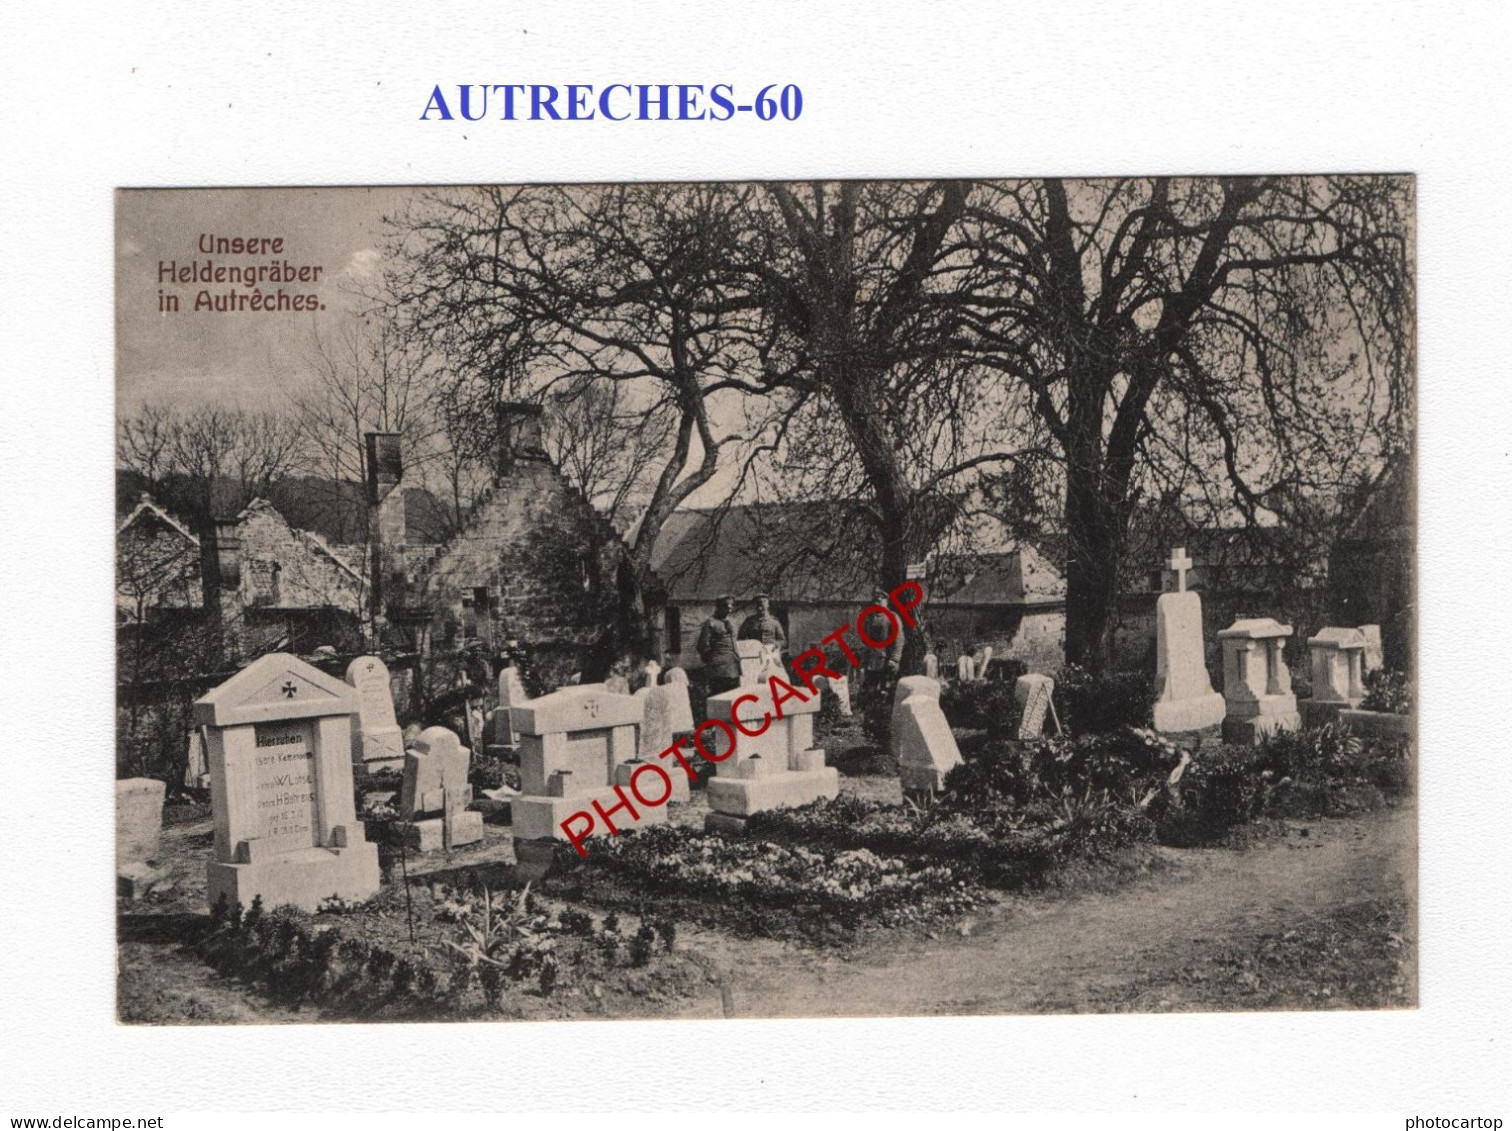 AUTRECHES-60-Monument-Cimetiere-Tombes-CARTE Imprimee Allemande-GUERRE 14-18-1 WK-MILITARIA-Feldpost - Oorlogsbegraafplaatsen